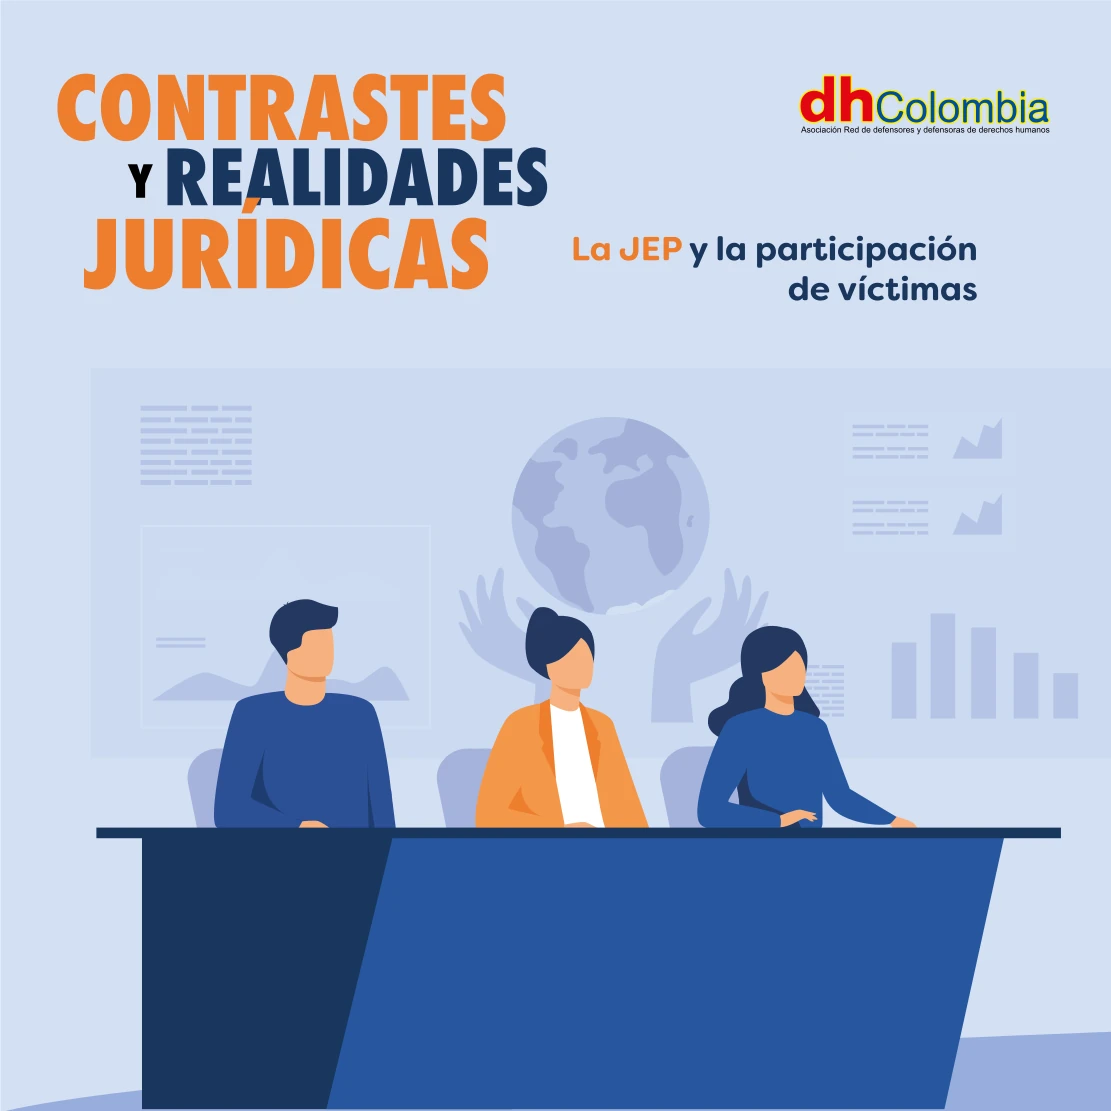 dhColombia Capacitación y gestión del conocimiento en materia de litigio estratégico 4. 01 contraste y realidades JEP